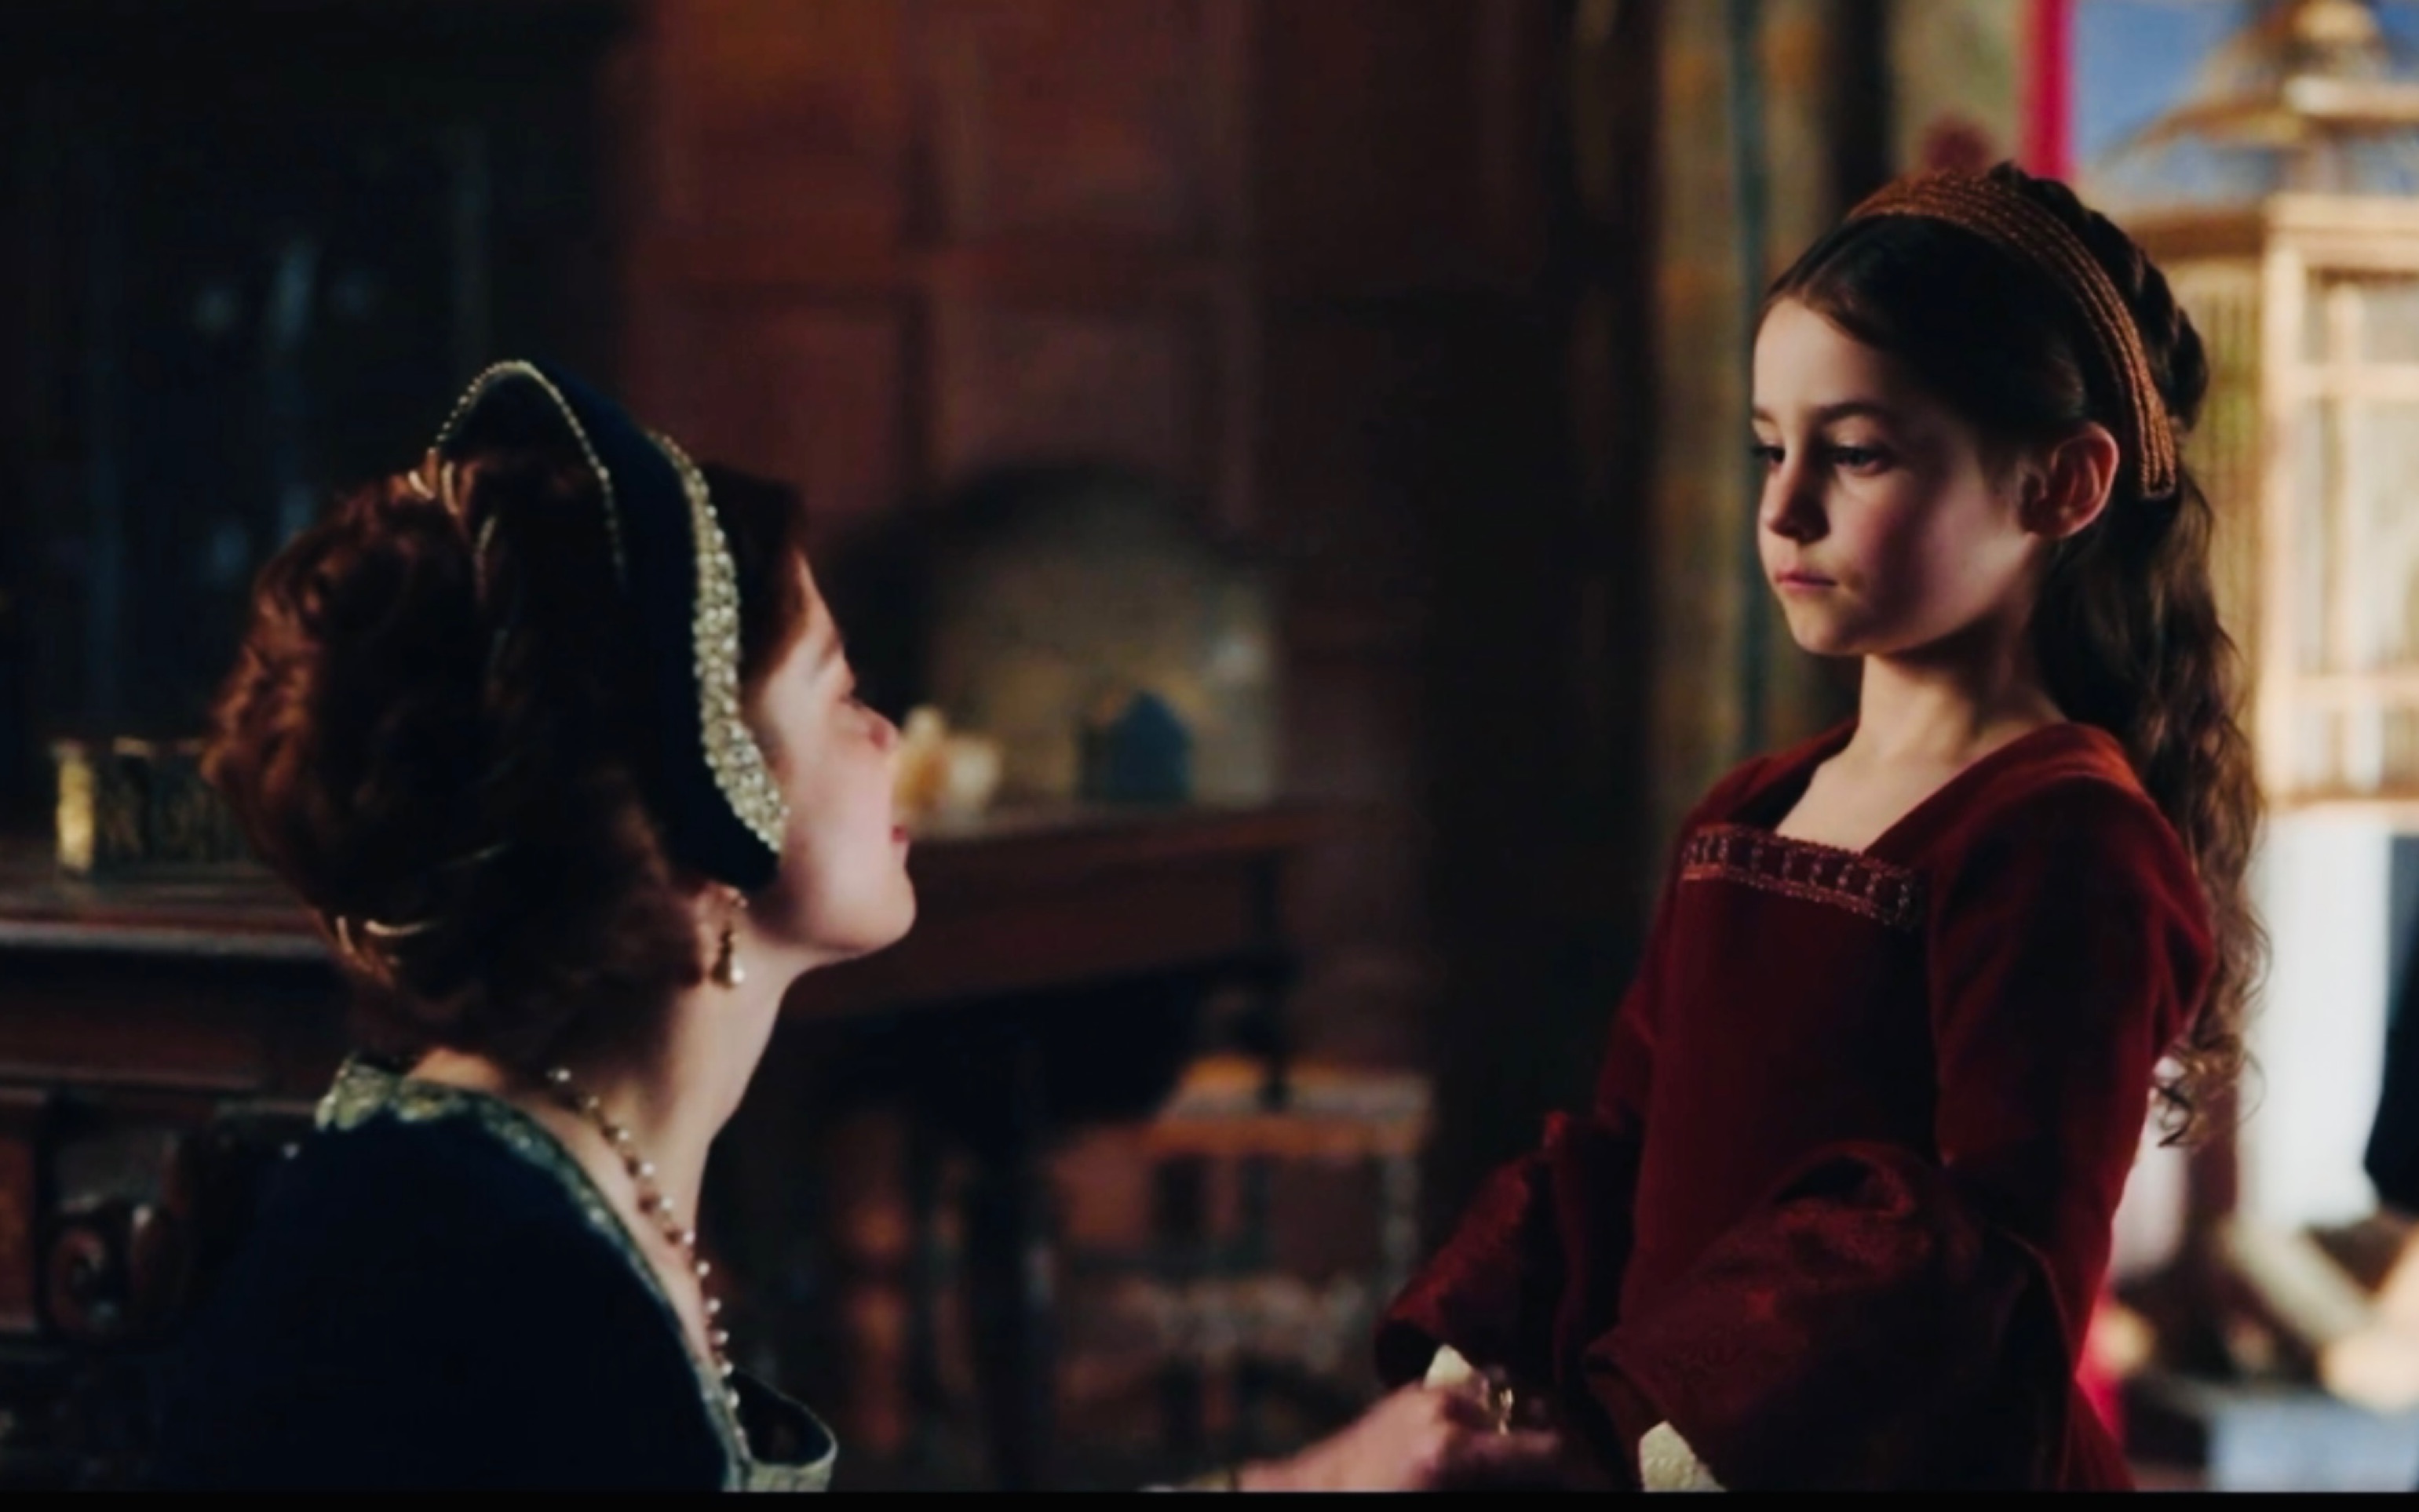 【西班牙公主第二季】 “你的母亲可是卡斯提尔女王伊莎贝拉，你的女儿身上流着武士女王的血脉”  玛丽不幸的童年——阿拉贡的凯瑟琳&玛丽公主